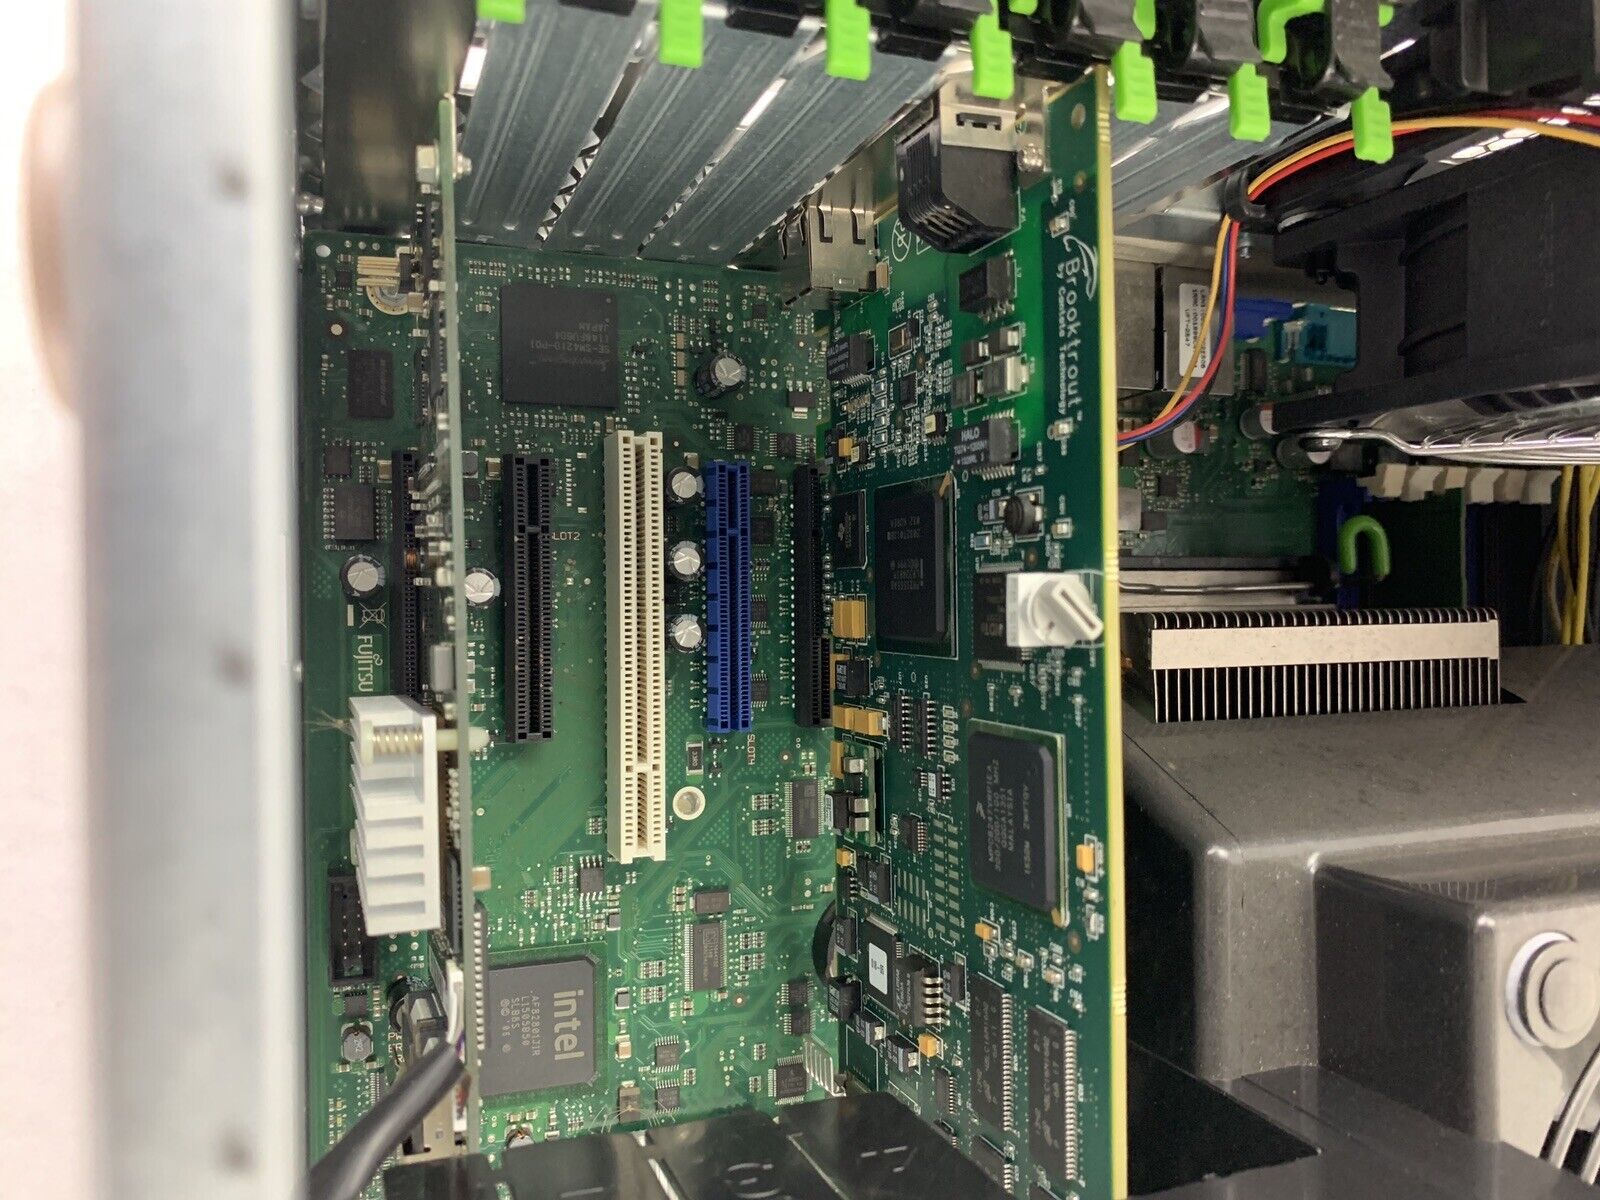 Fujitsu Primergy TX200 S6 Server Quad Core E5606 2.13 GHz 4 GB Ram No HDD No OS